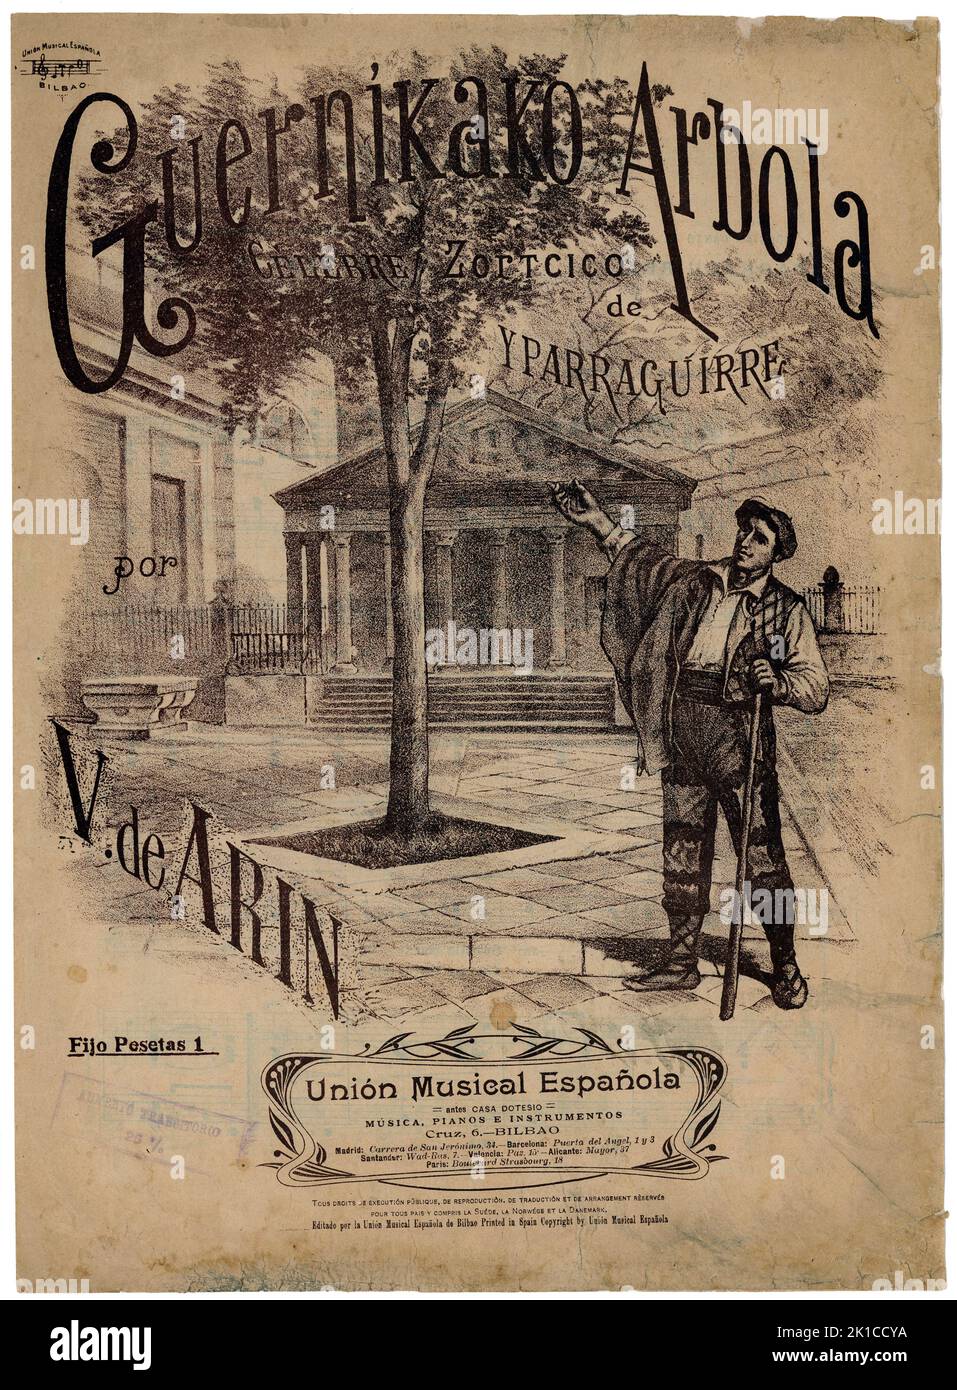 Partitura Musical del himno vasco Guernikako Arbola, de Yparraguirre. Años 1900. Stockfoto